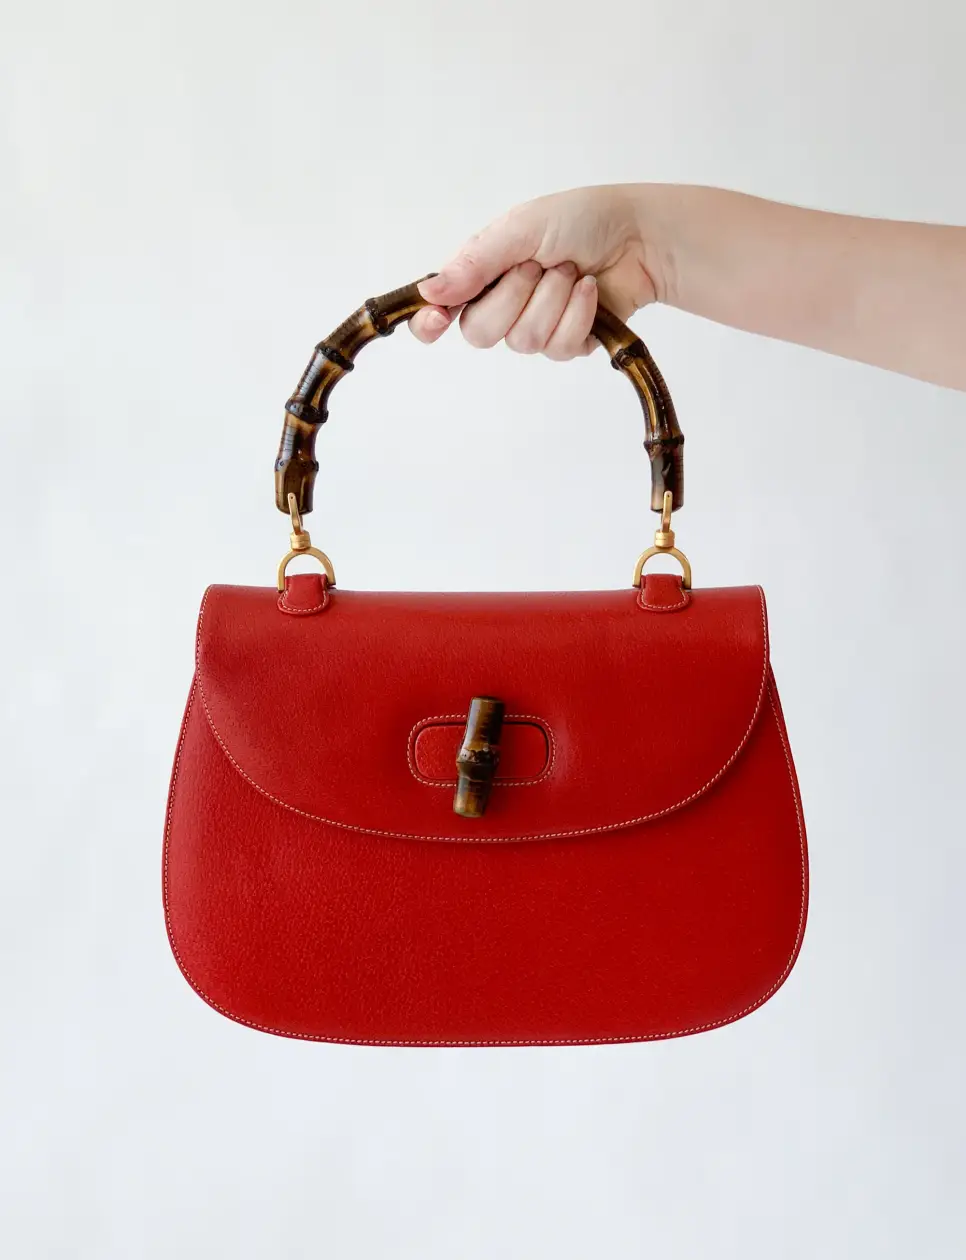 Desain tas wanita Gucci Bamboo yang dipopulerkan kembali oleh Dawn Mello